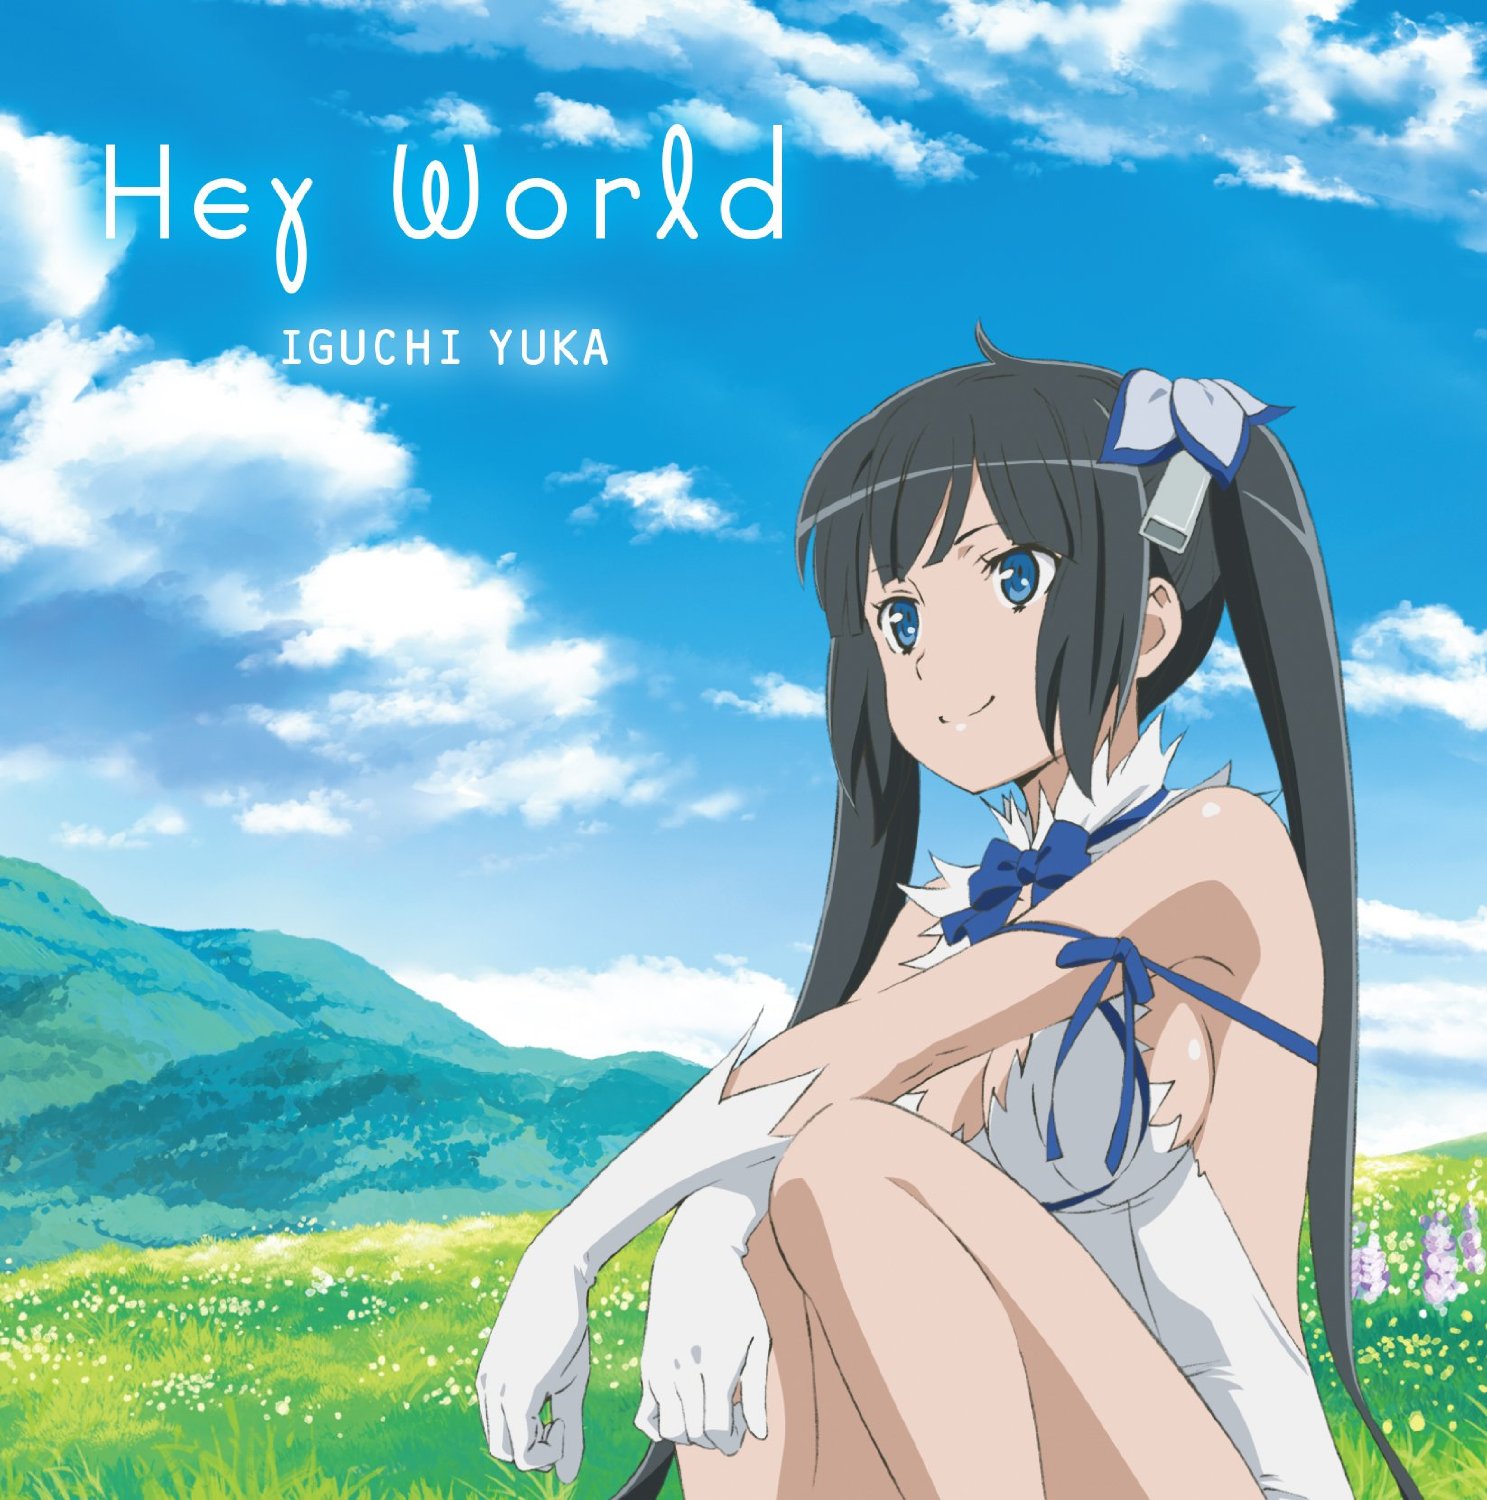 Yuka Iguchi - Hey World [Opening Dungeon ni Deai wo Motomeru no wa Machigatteiru Darou ka]